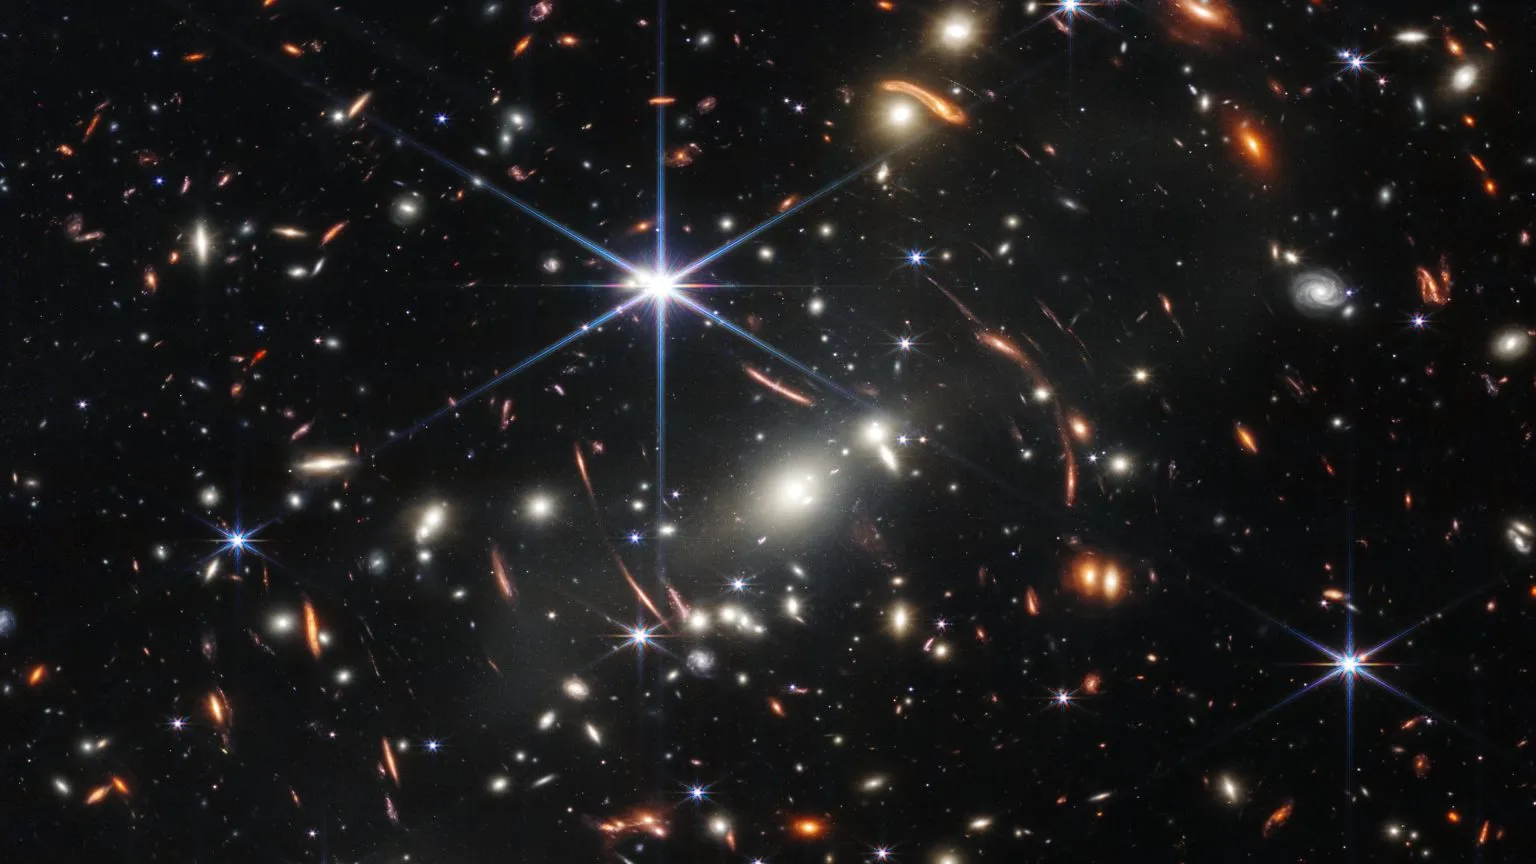 韦伯太空望远镜观察到以 宇宙火球 形态存在的早期星系